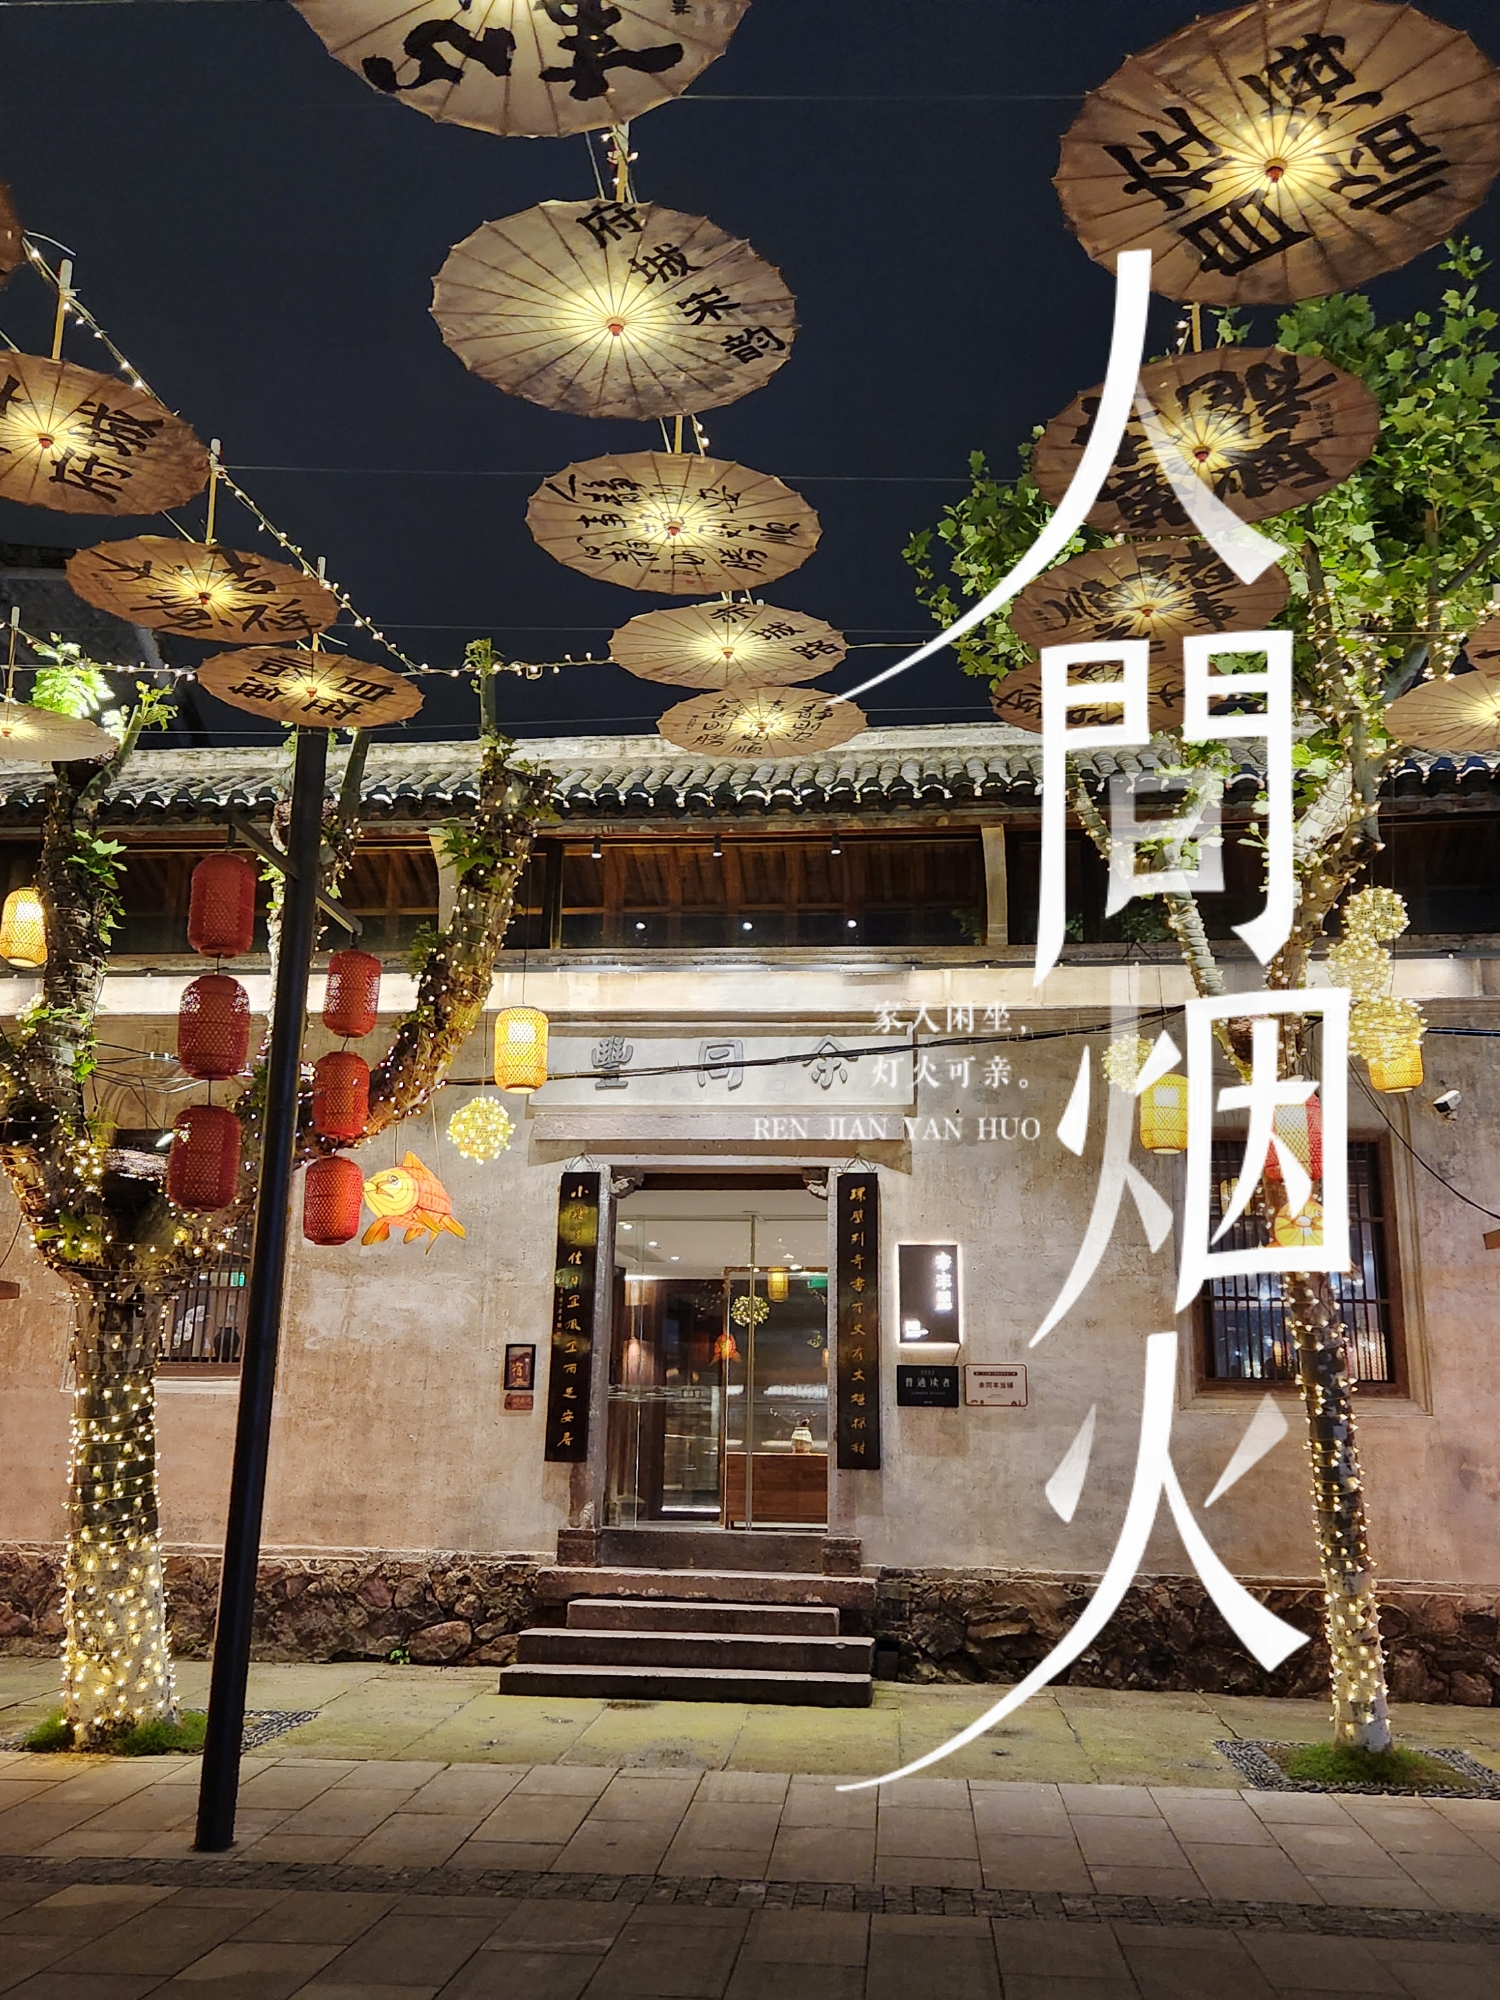 选择入住余丰里不仅仅是离紫阳古街近，更多的是体验入住的灵感以及民宿历史的文化、台州的美食文化。民宿非